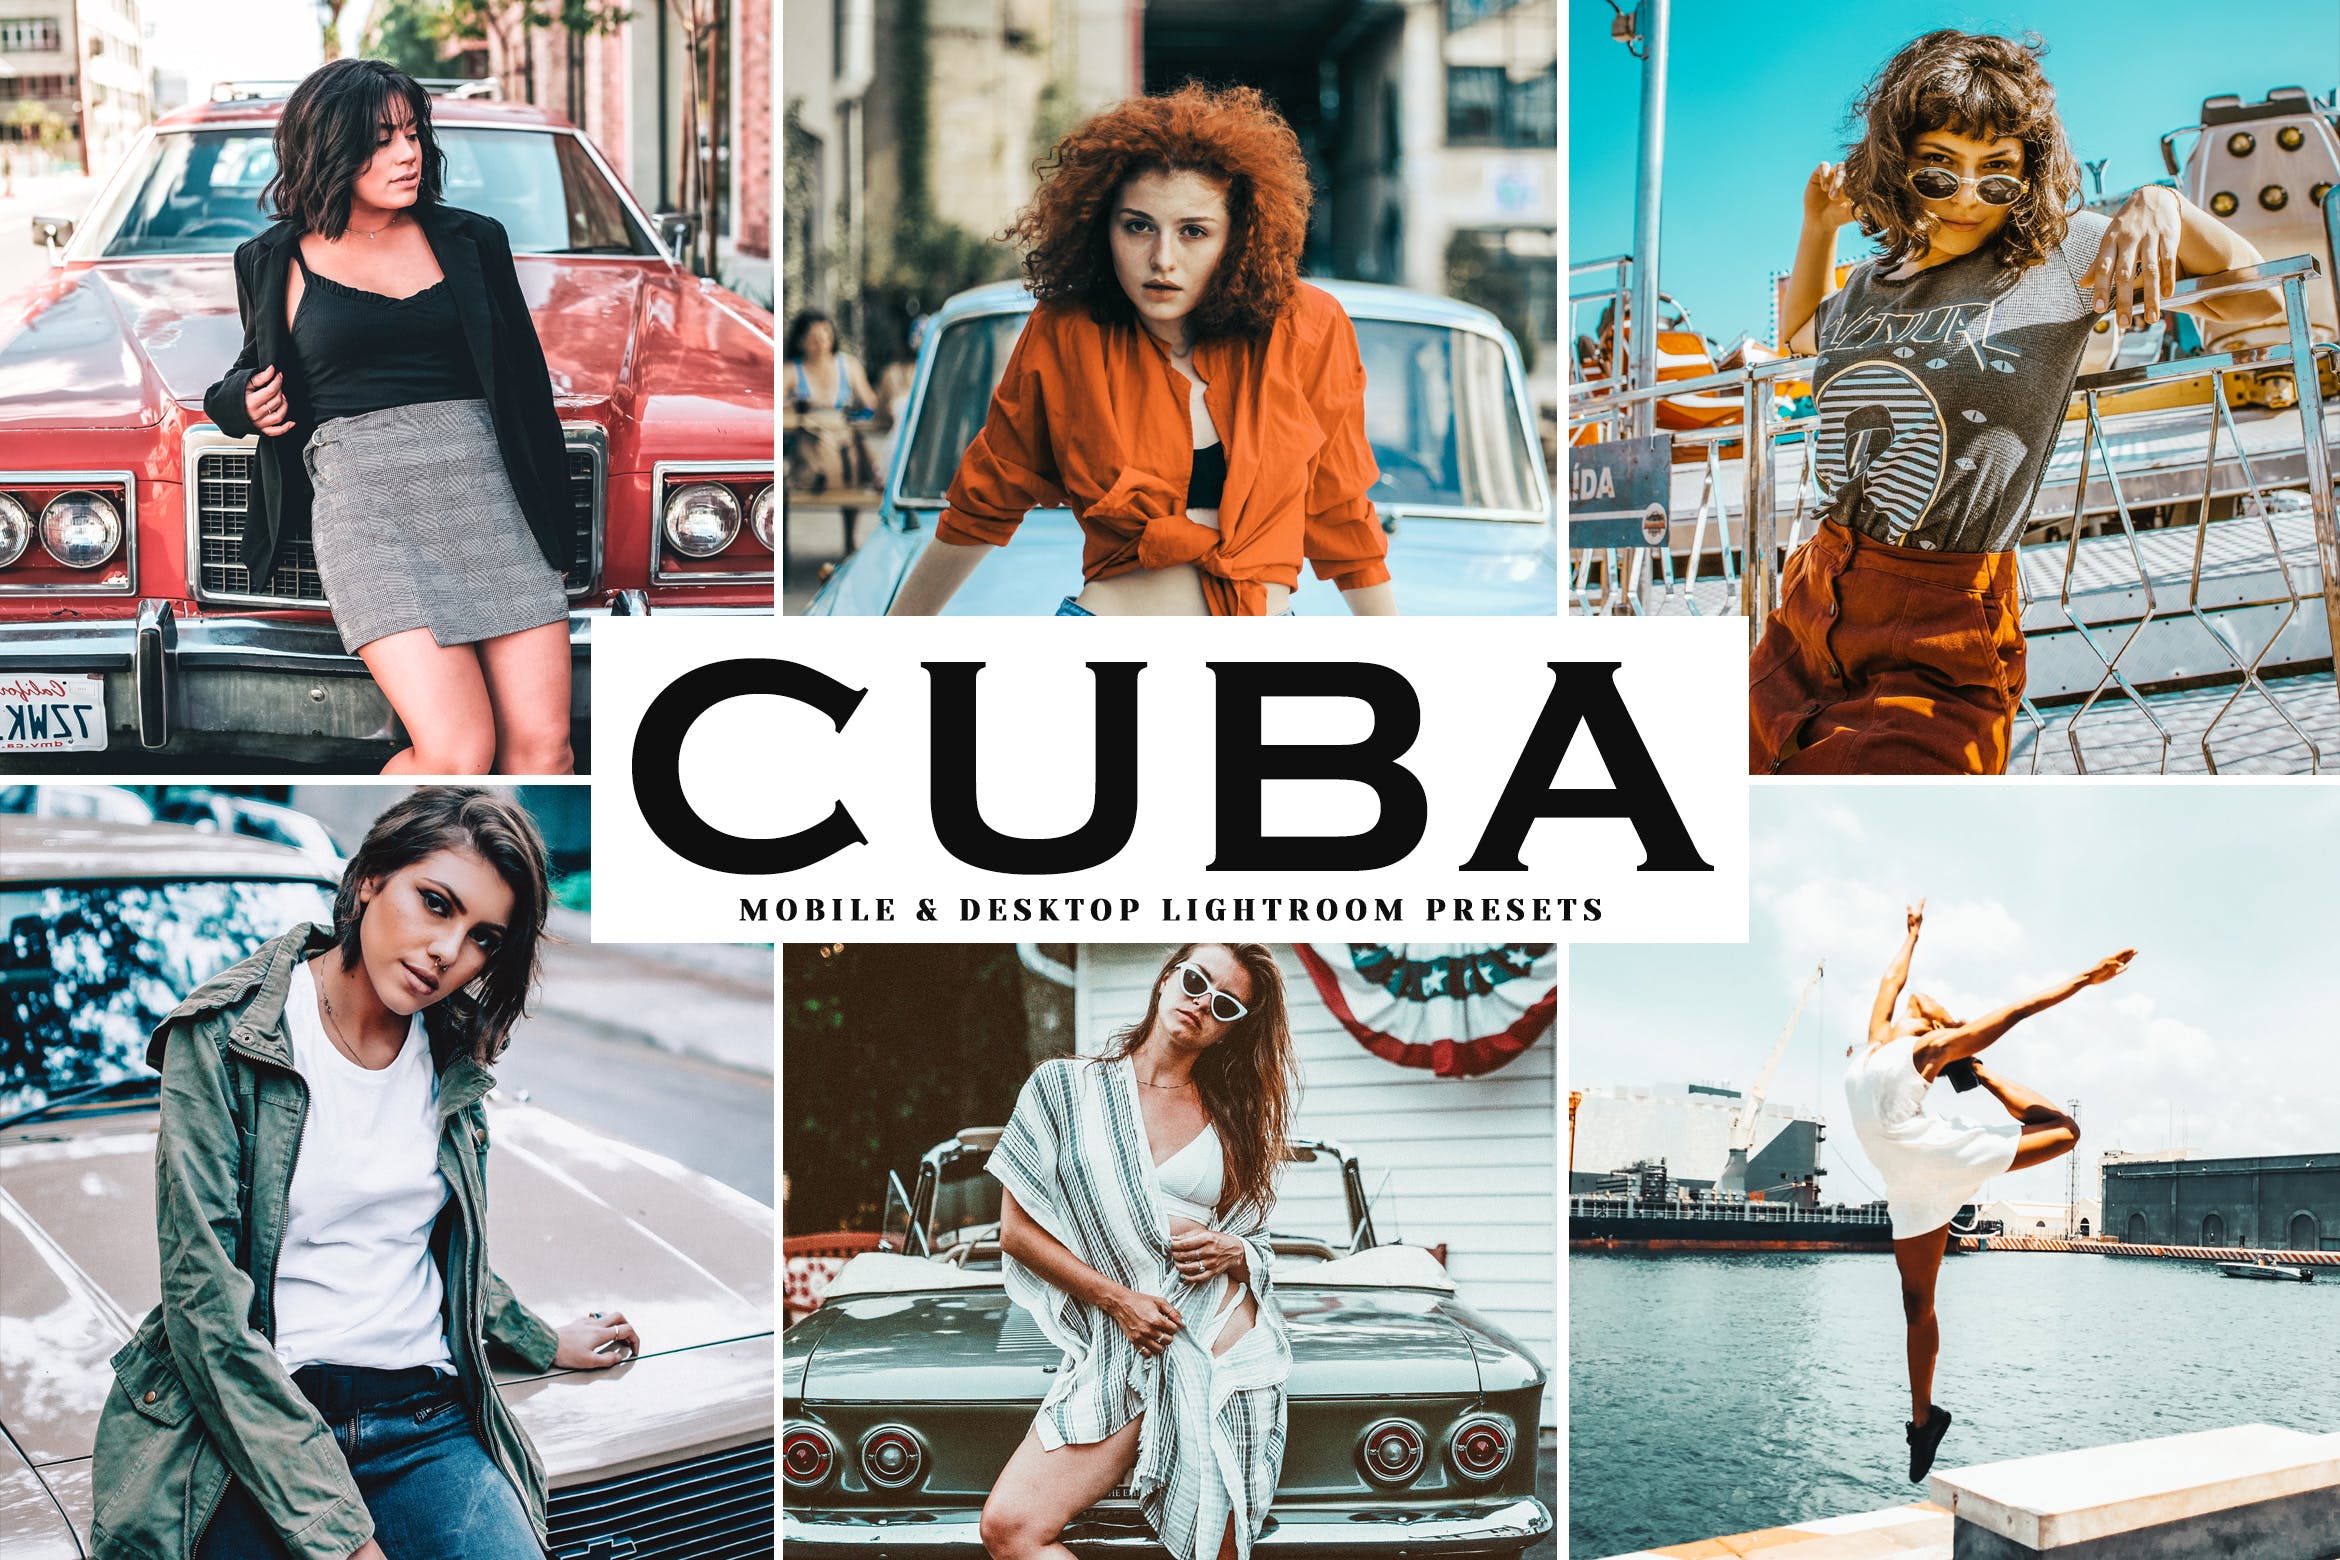 复古风格照片调色滤镜16设计素材网精选LR预设 Cuba Mobile & Desktop Lightroom Presets插图